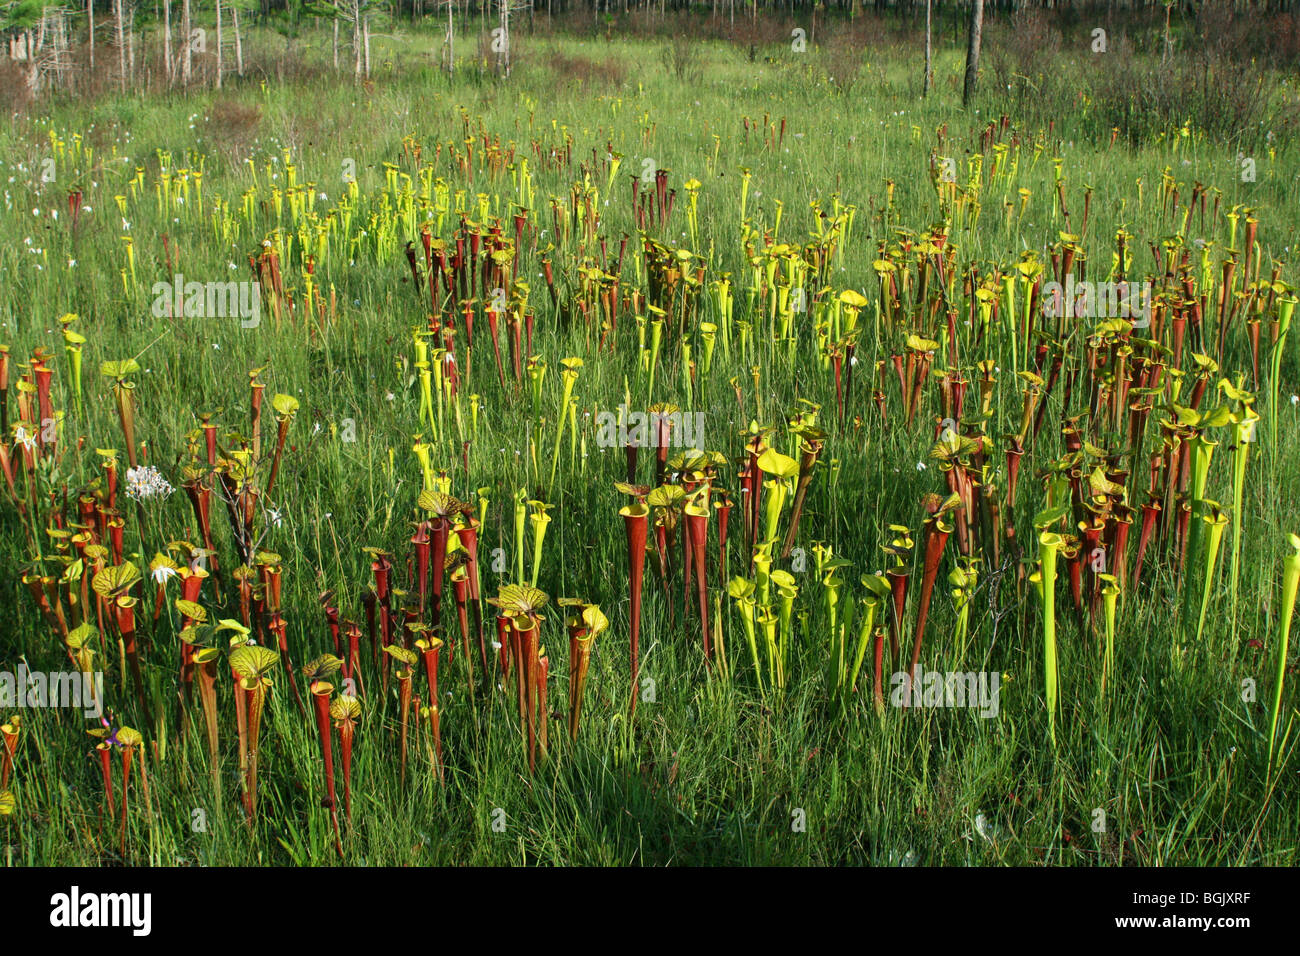 Fleischfressende Pflanze Trompete Schlauchpflanzen Sarracenia flava & S. flava var rubricorpora Florida USA Stockfoto